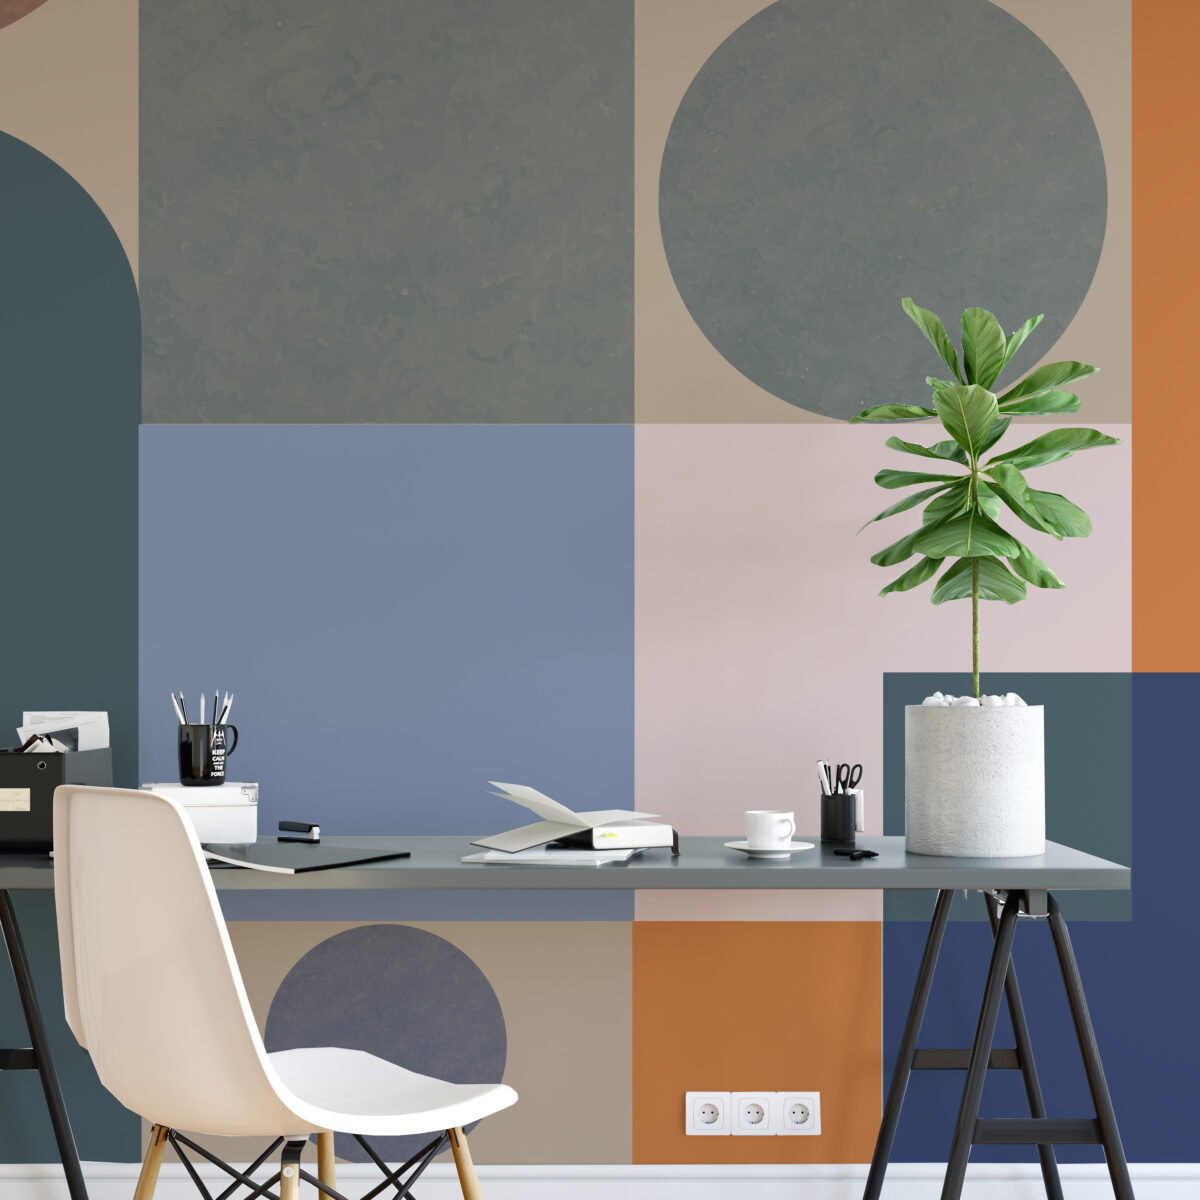 Papel tapiz con estilo Bauhaus para decorar oficinas 